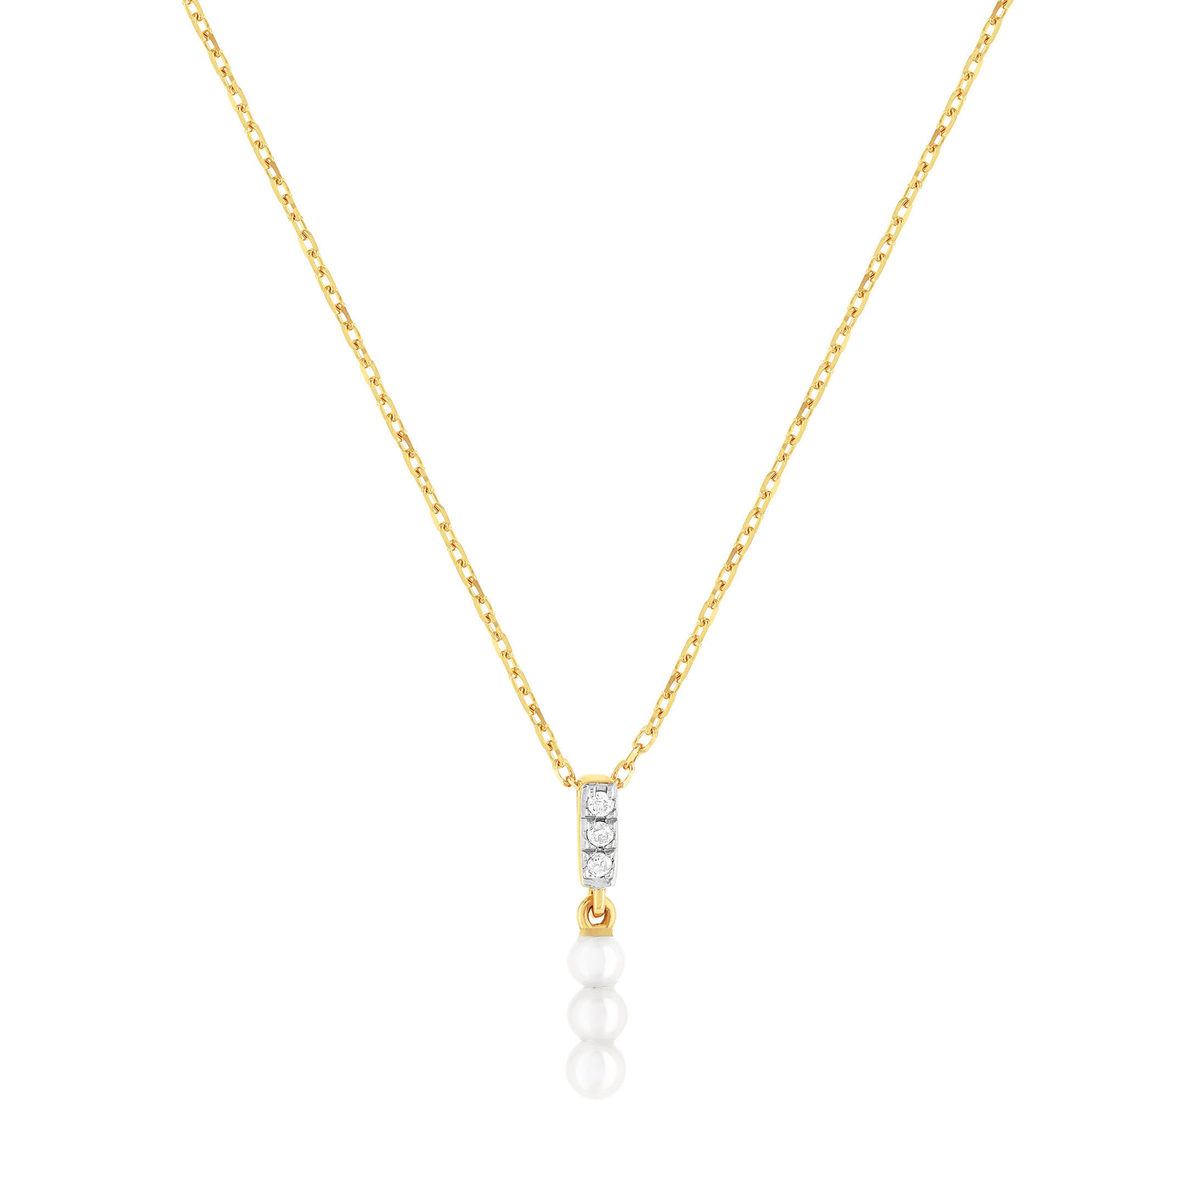 Collier or 375 2 tons perles de culture de Chine et diamants 45 cm avec anneau de raccourcissement à 42 cm